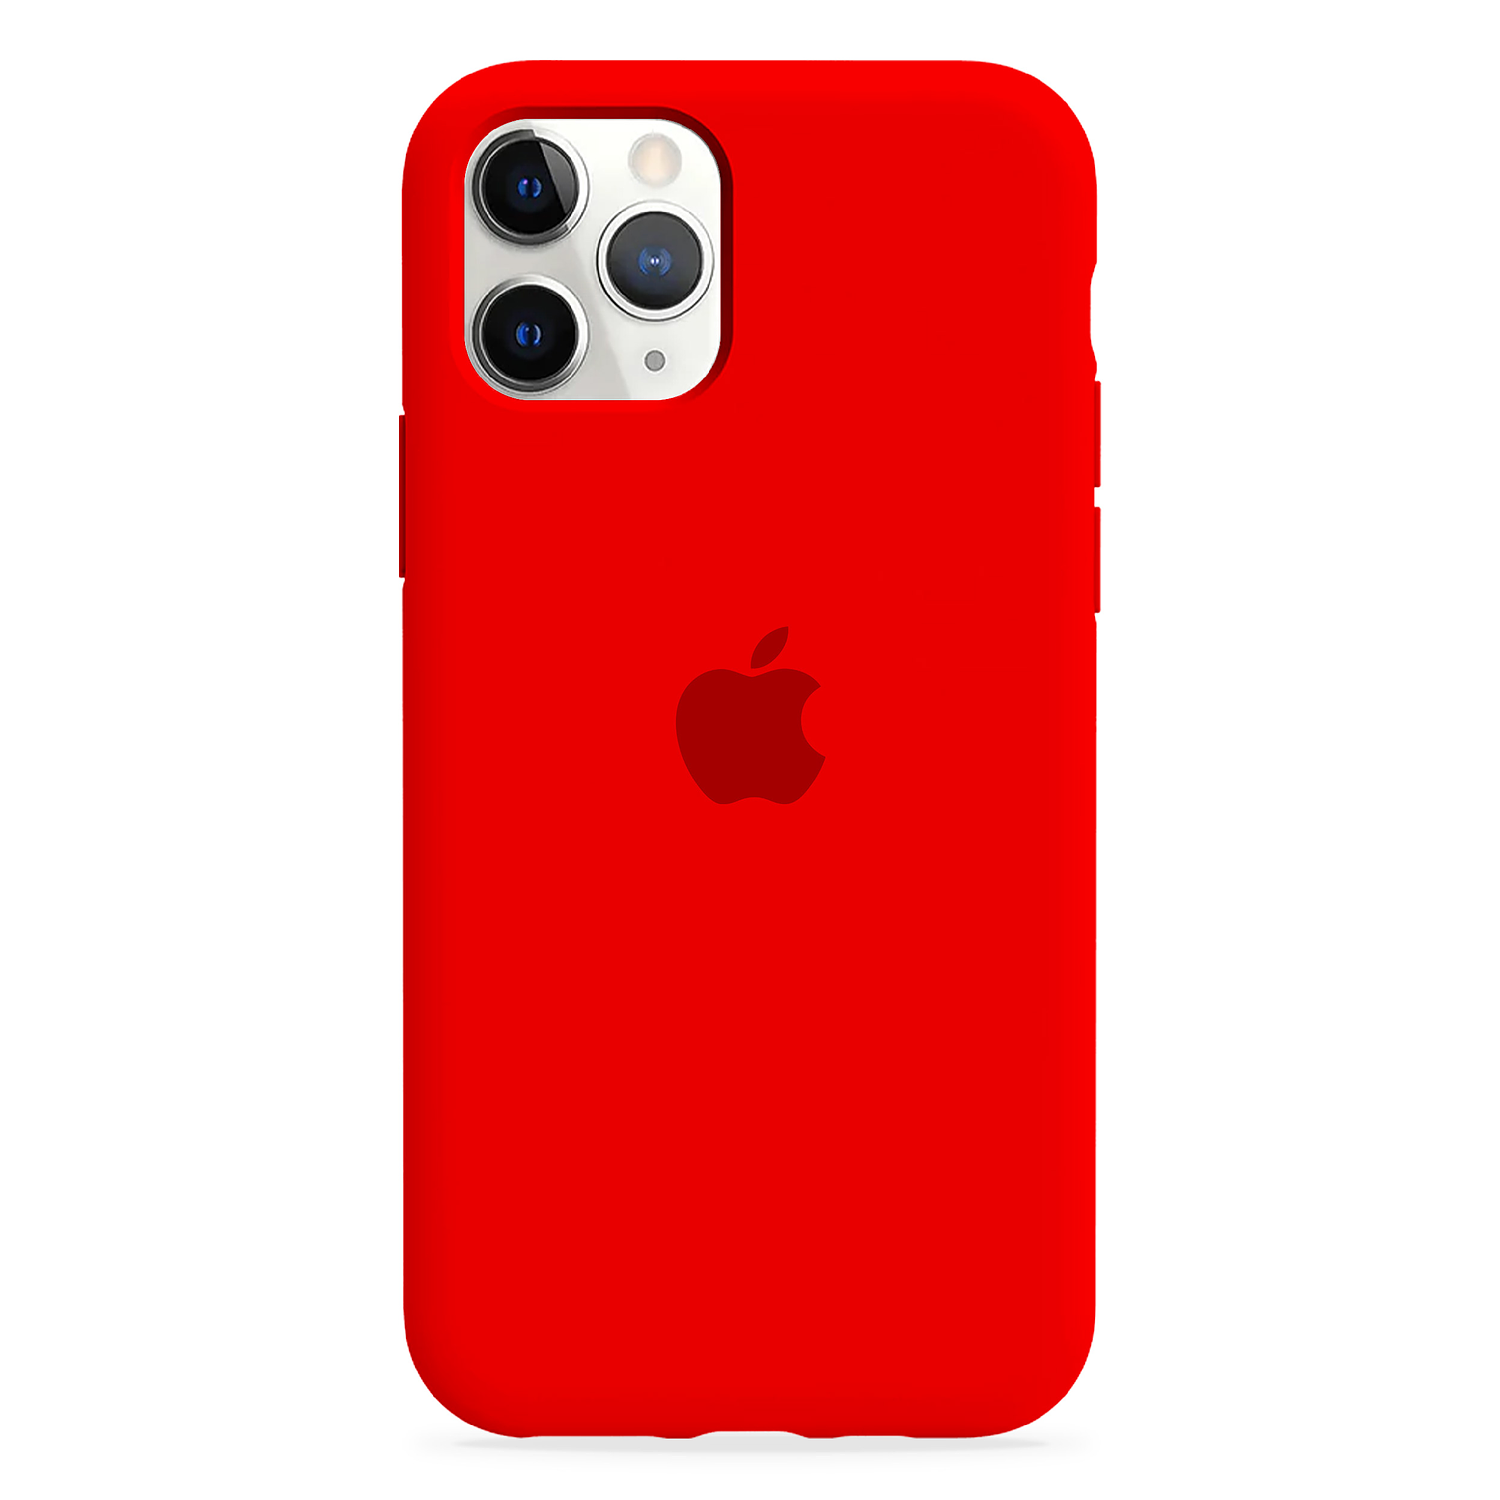 Carcasa de Silicona - iPhone 11 Pro Max 8